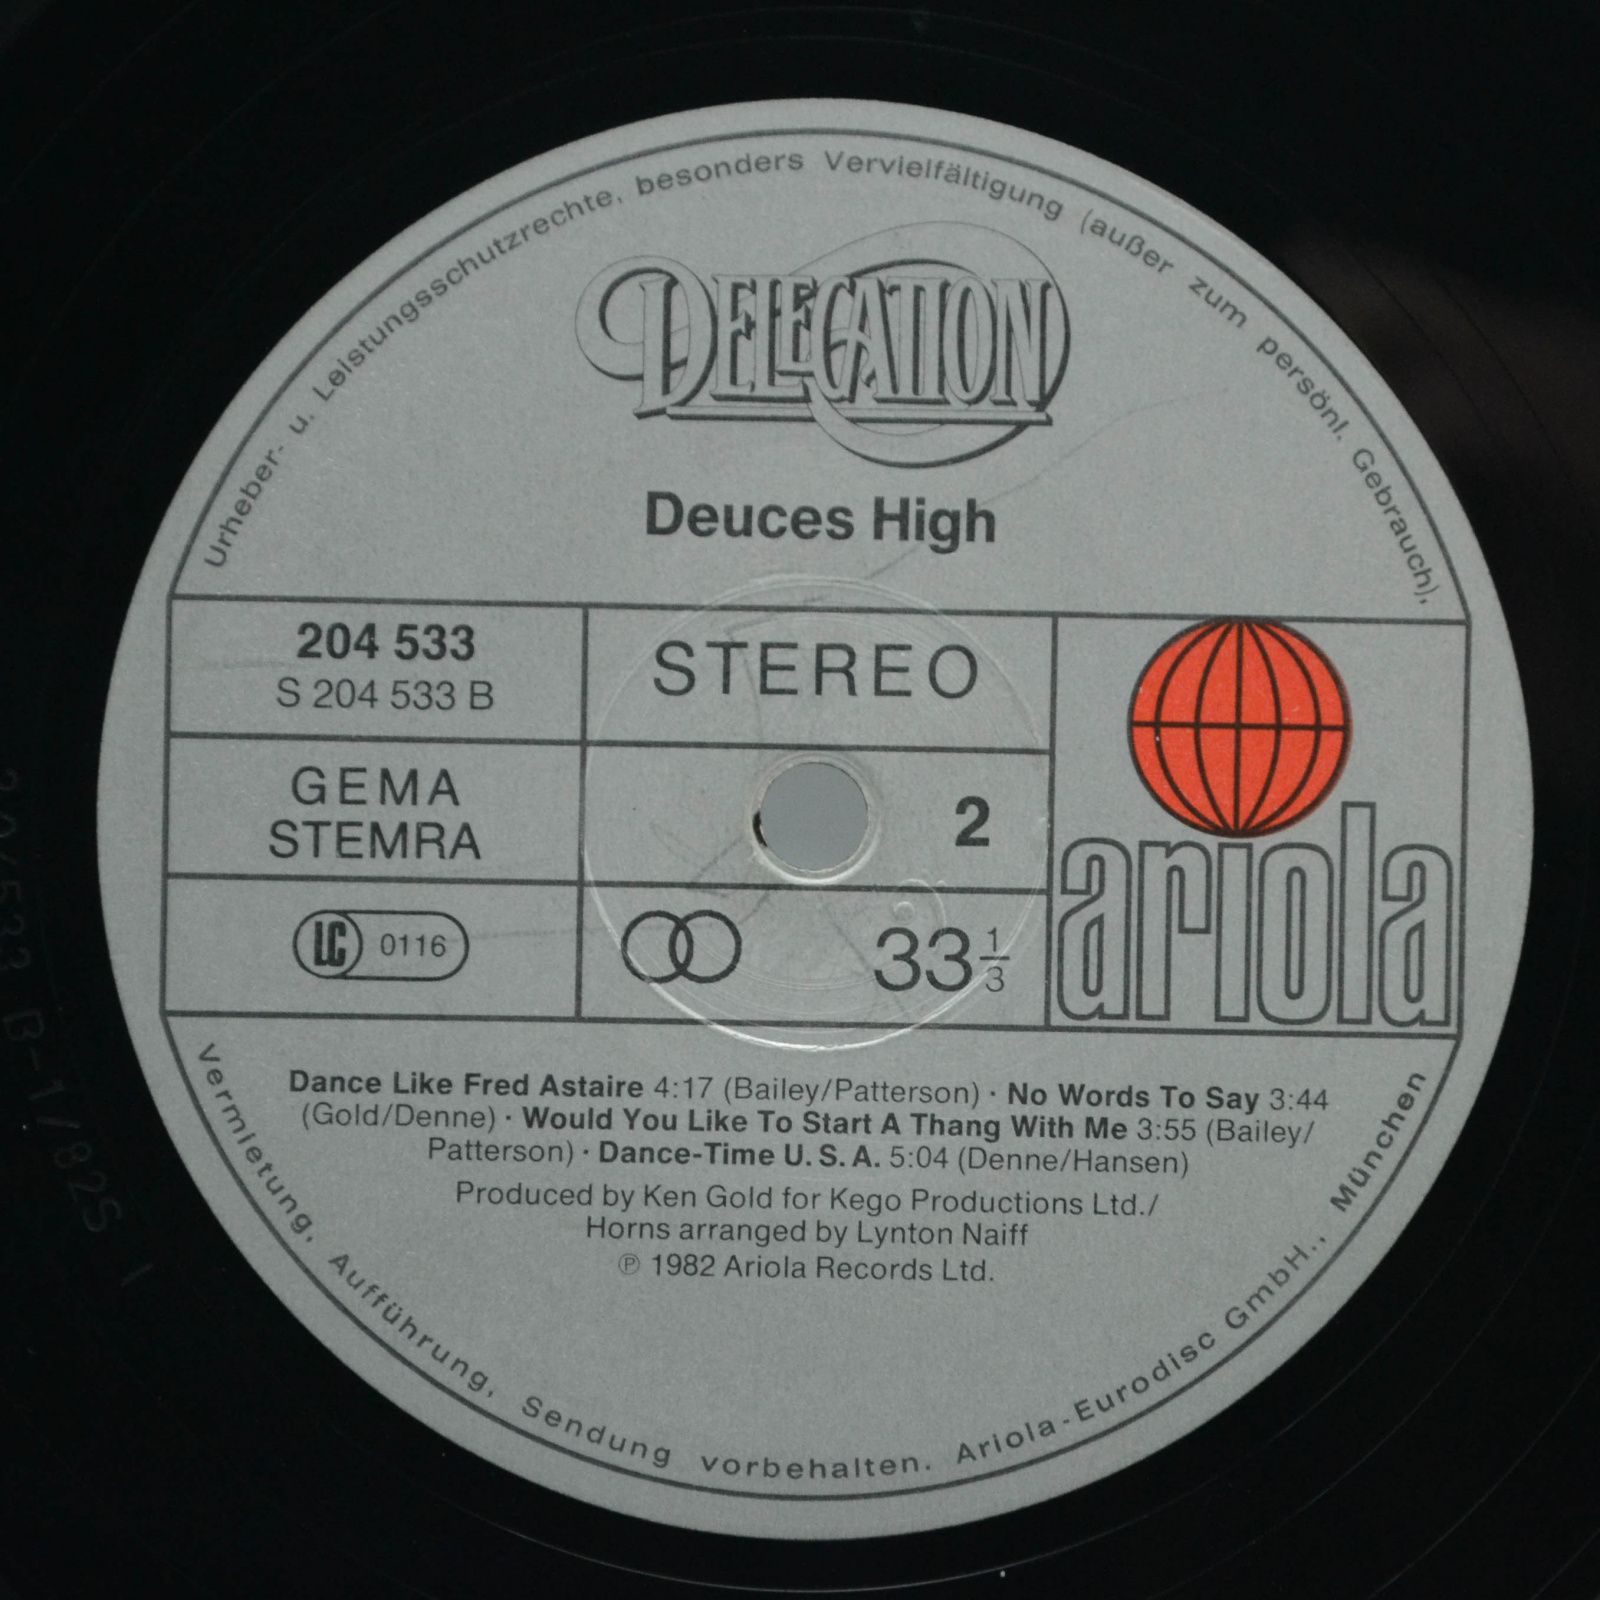 Delegation — Deuces High, 1982